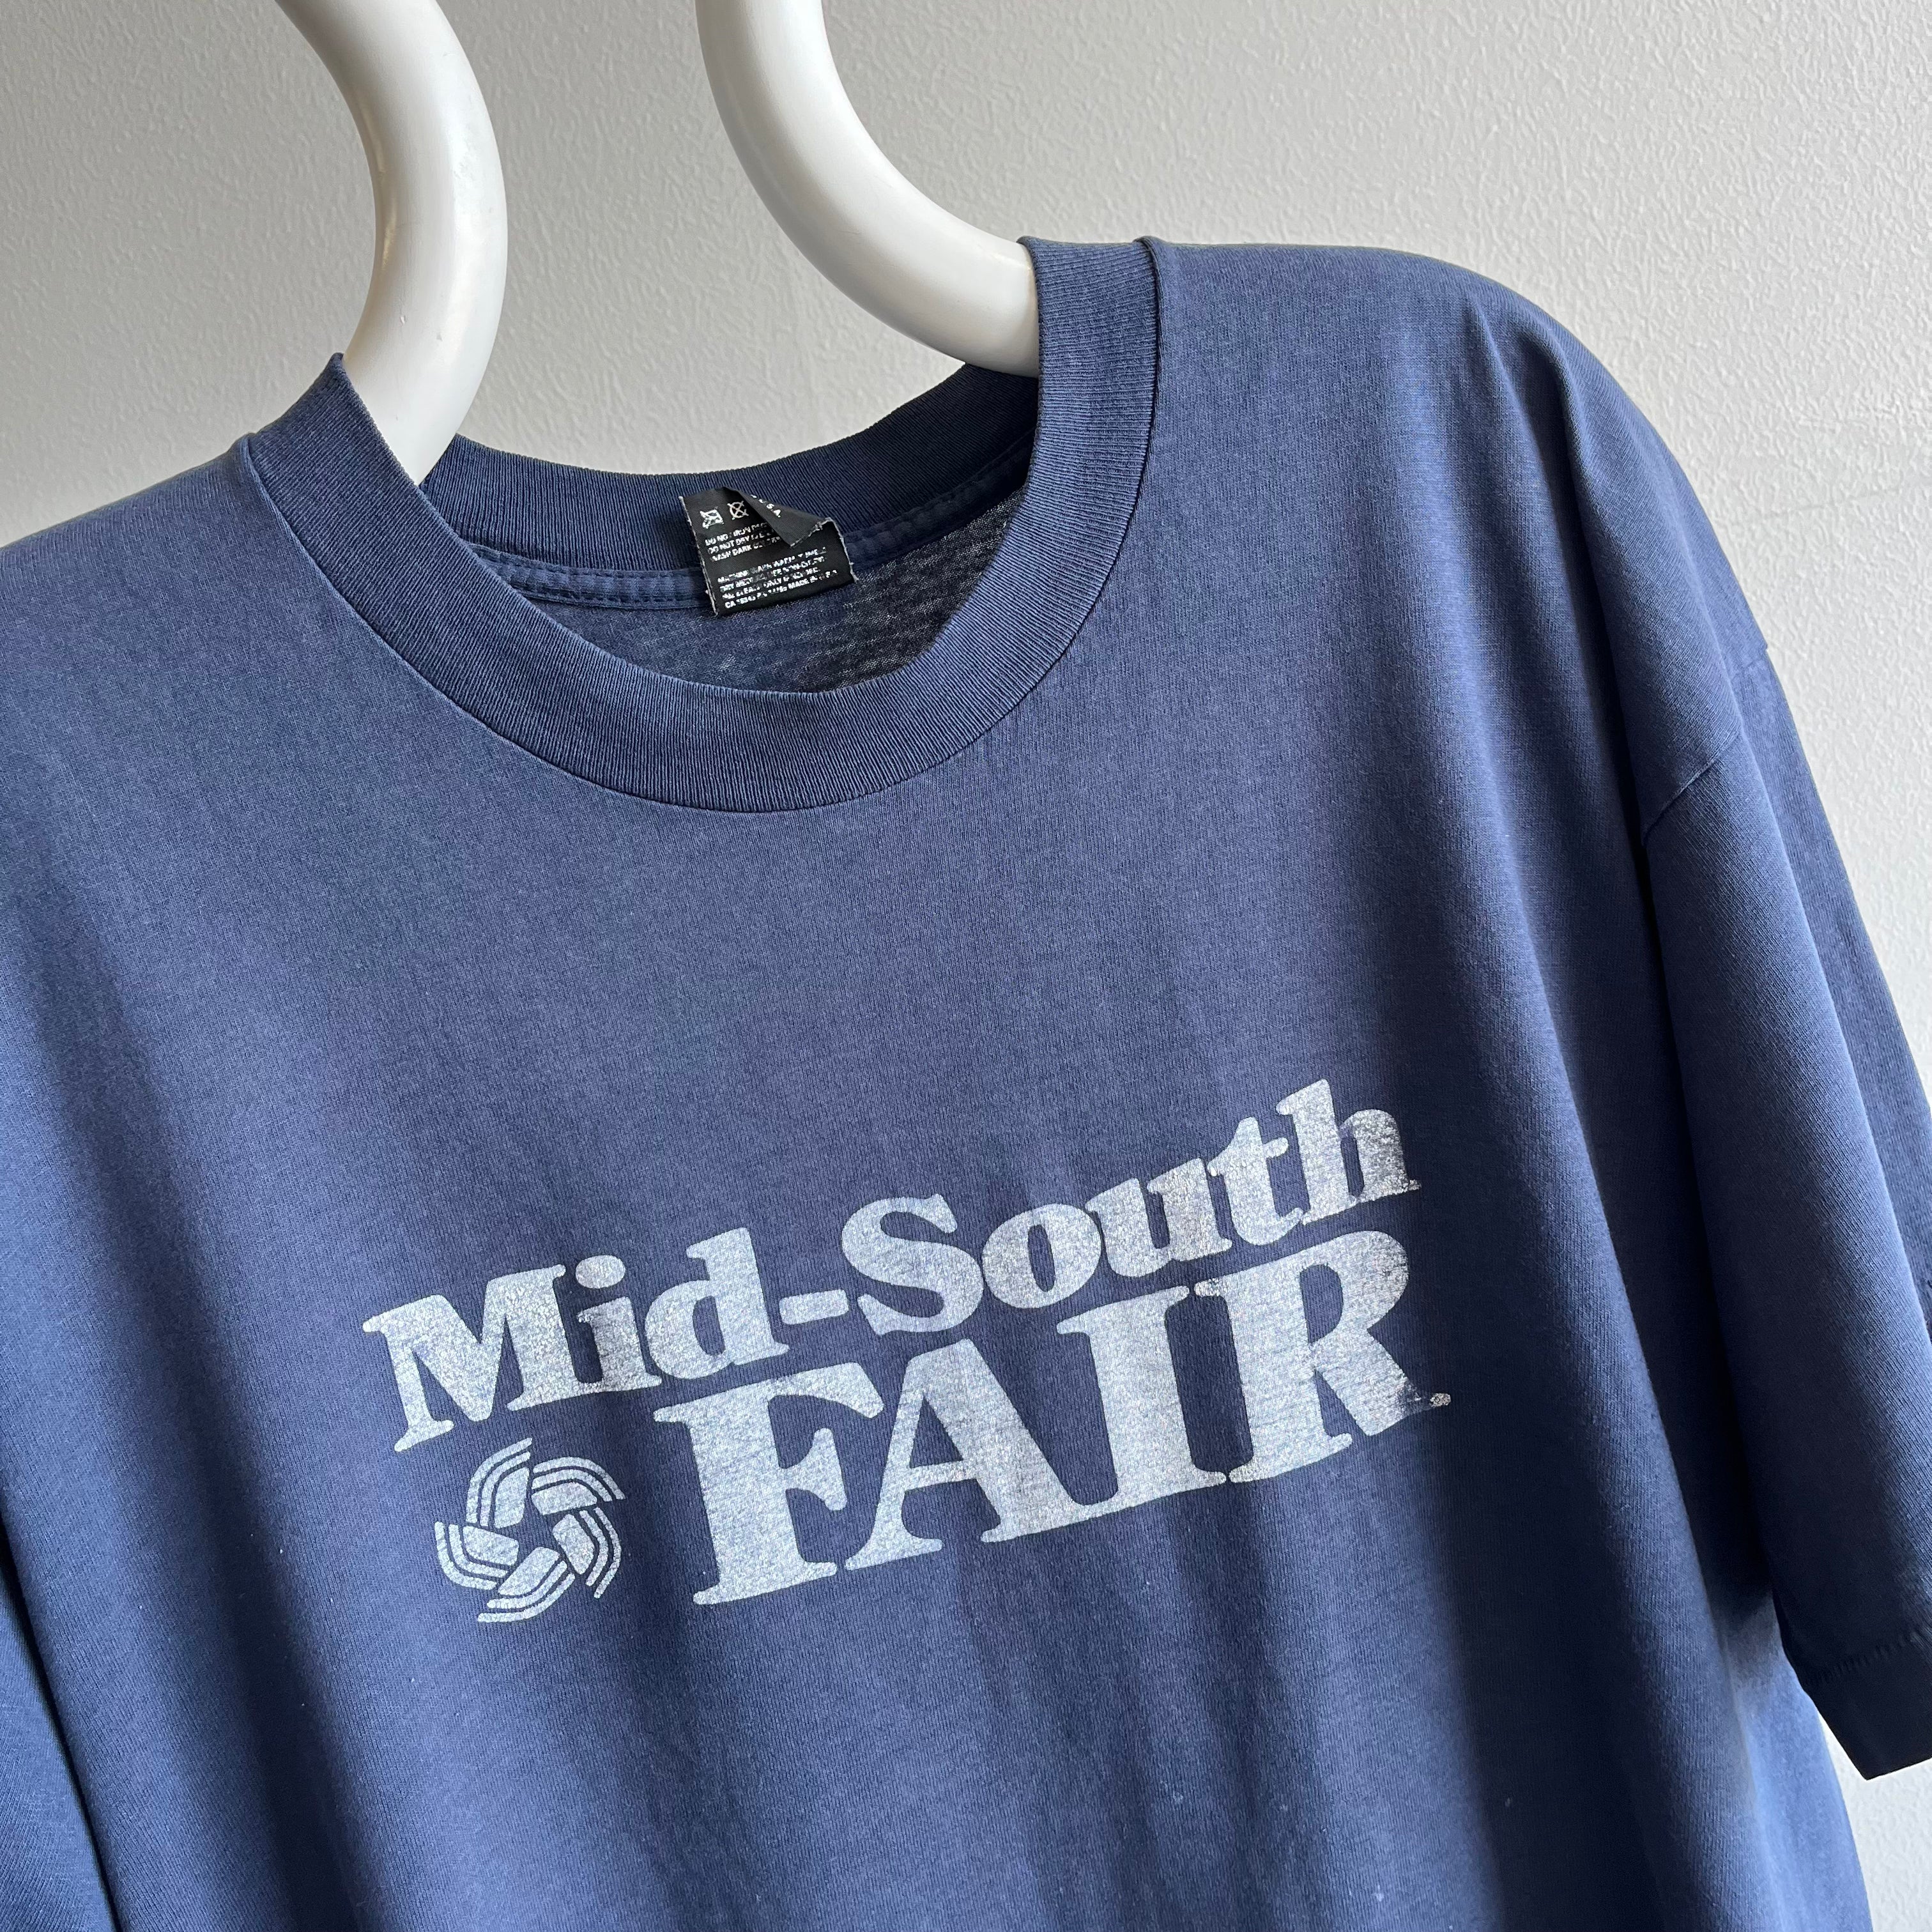 1980s Mid-South Fair T-SHirt